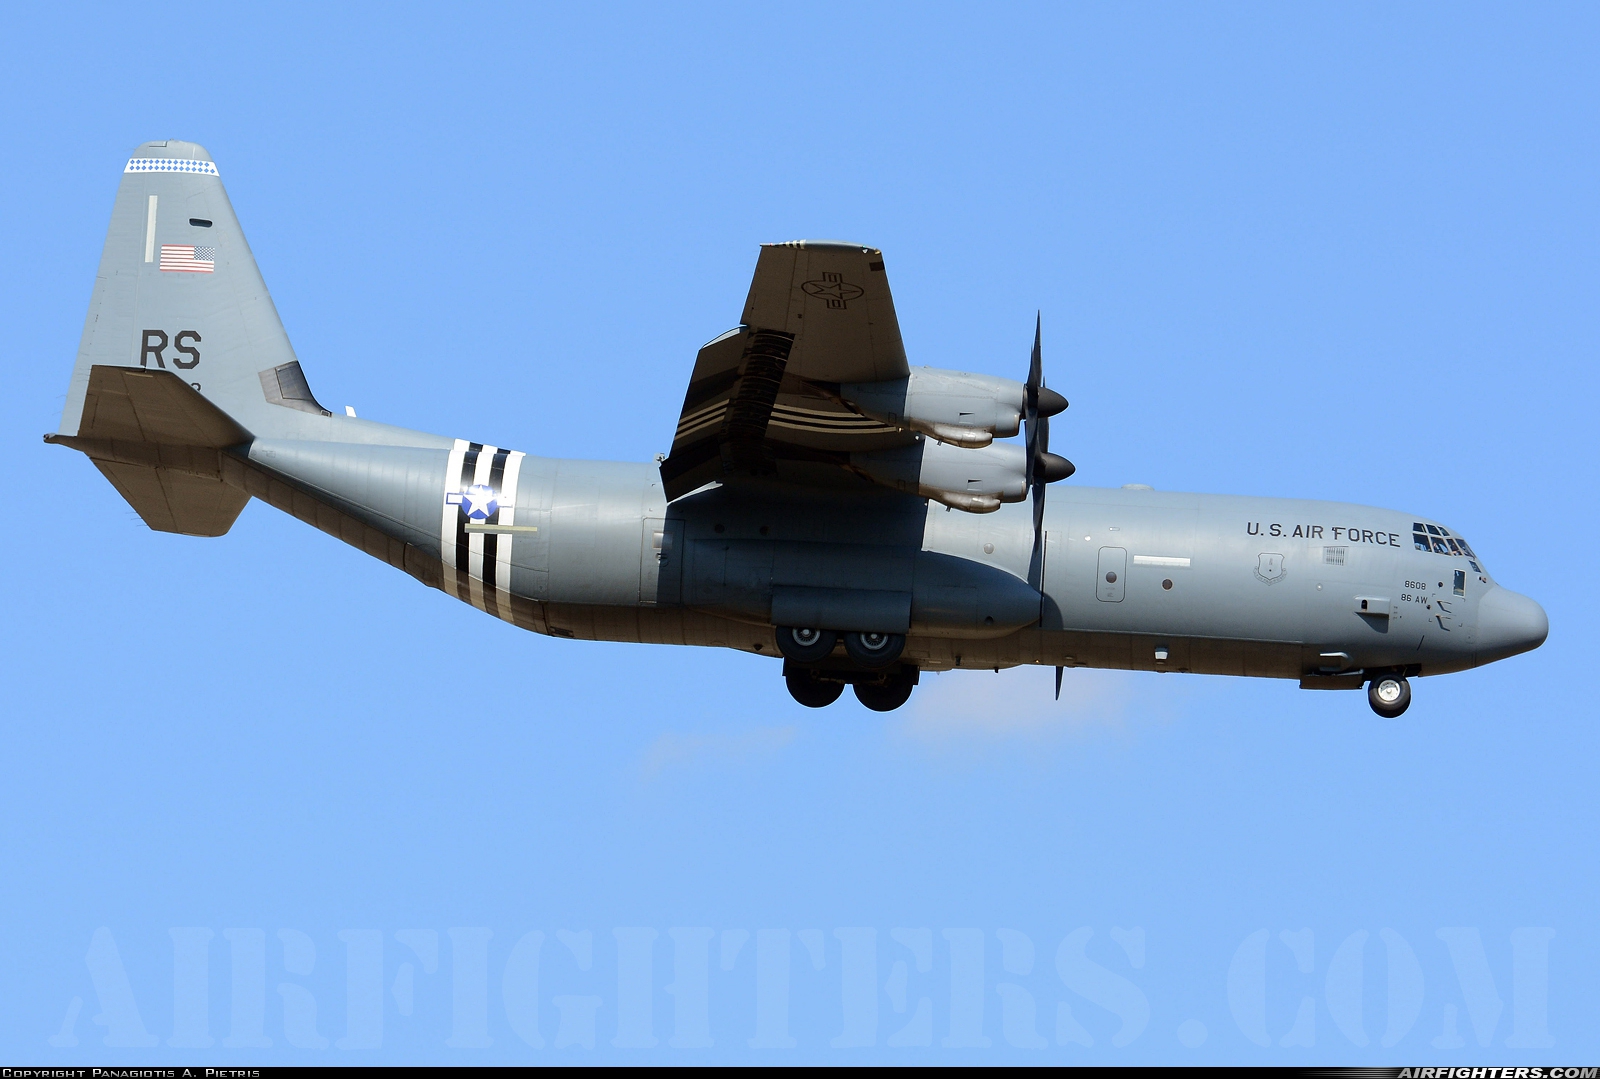 USA - Air Force Lockheed Martin C-130J-30 Hercules (L-382) 07-8608 at Elefsís (LGEL), Greece